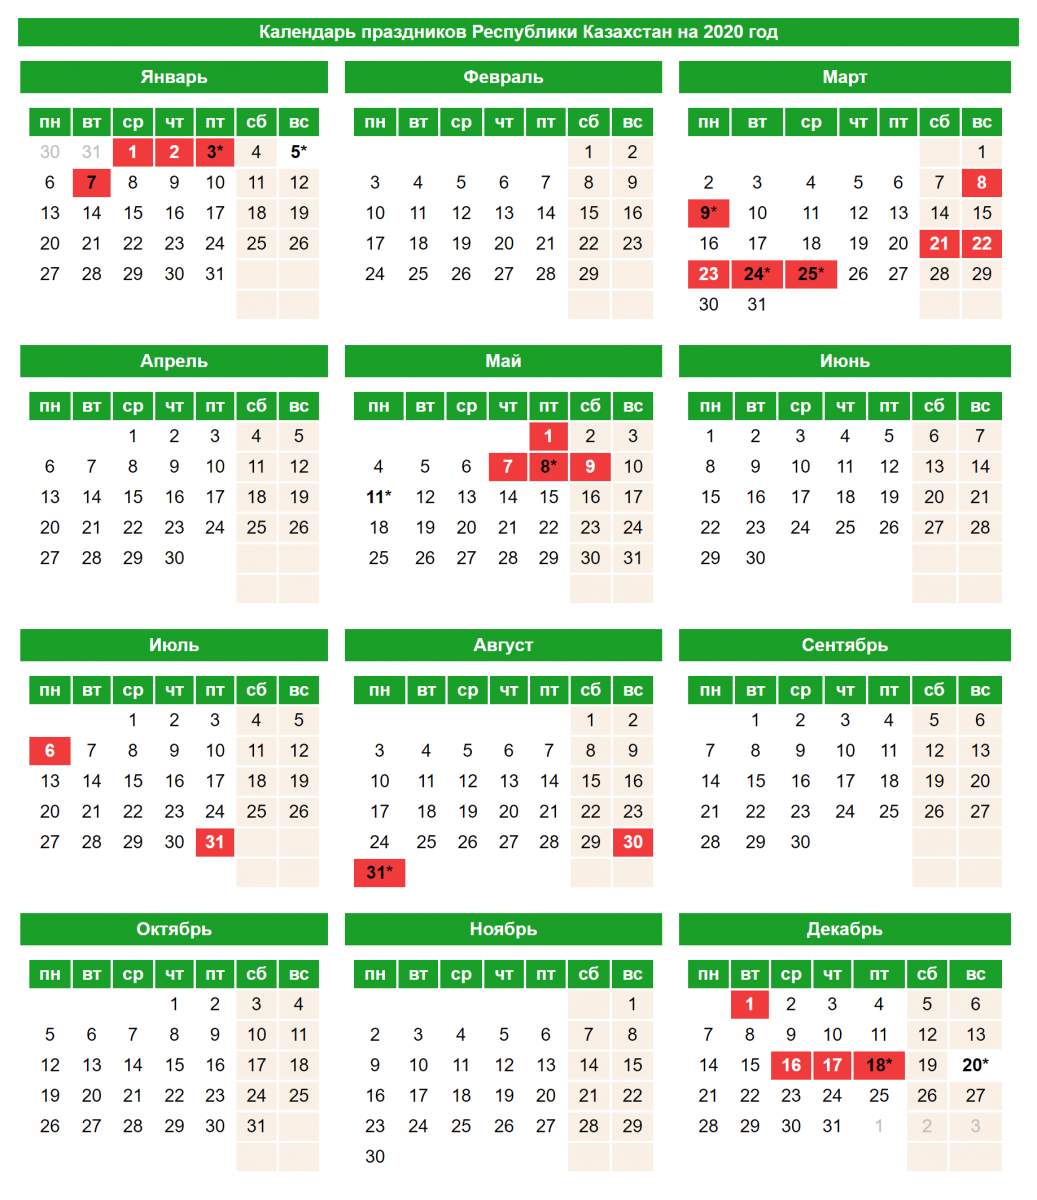 Выходные в кз. Праздничные дни в Казахстане 2021 году. Календарь 2021 Казахстан с праздниками. Календарь 2020-2021 год с праздниками РК. Выходные в Казахстане.